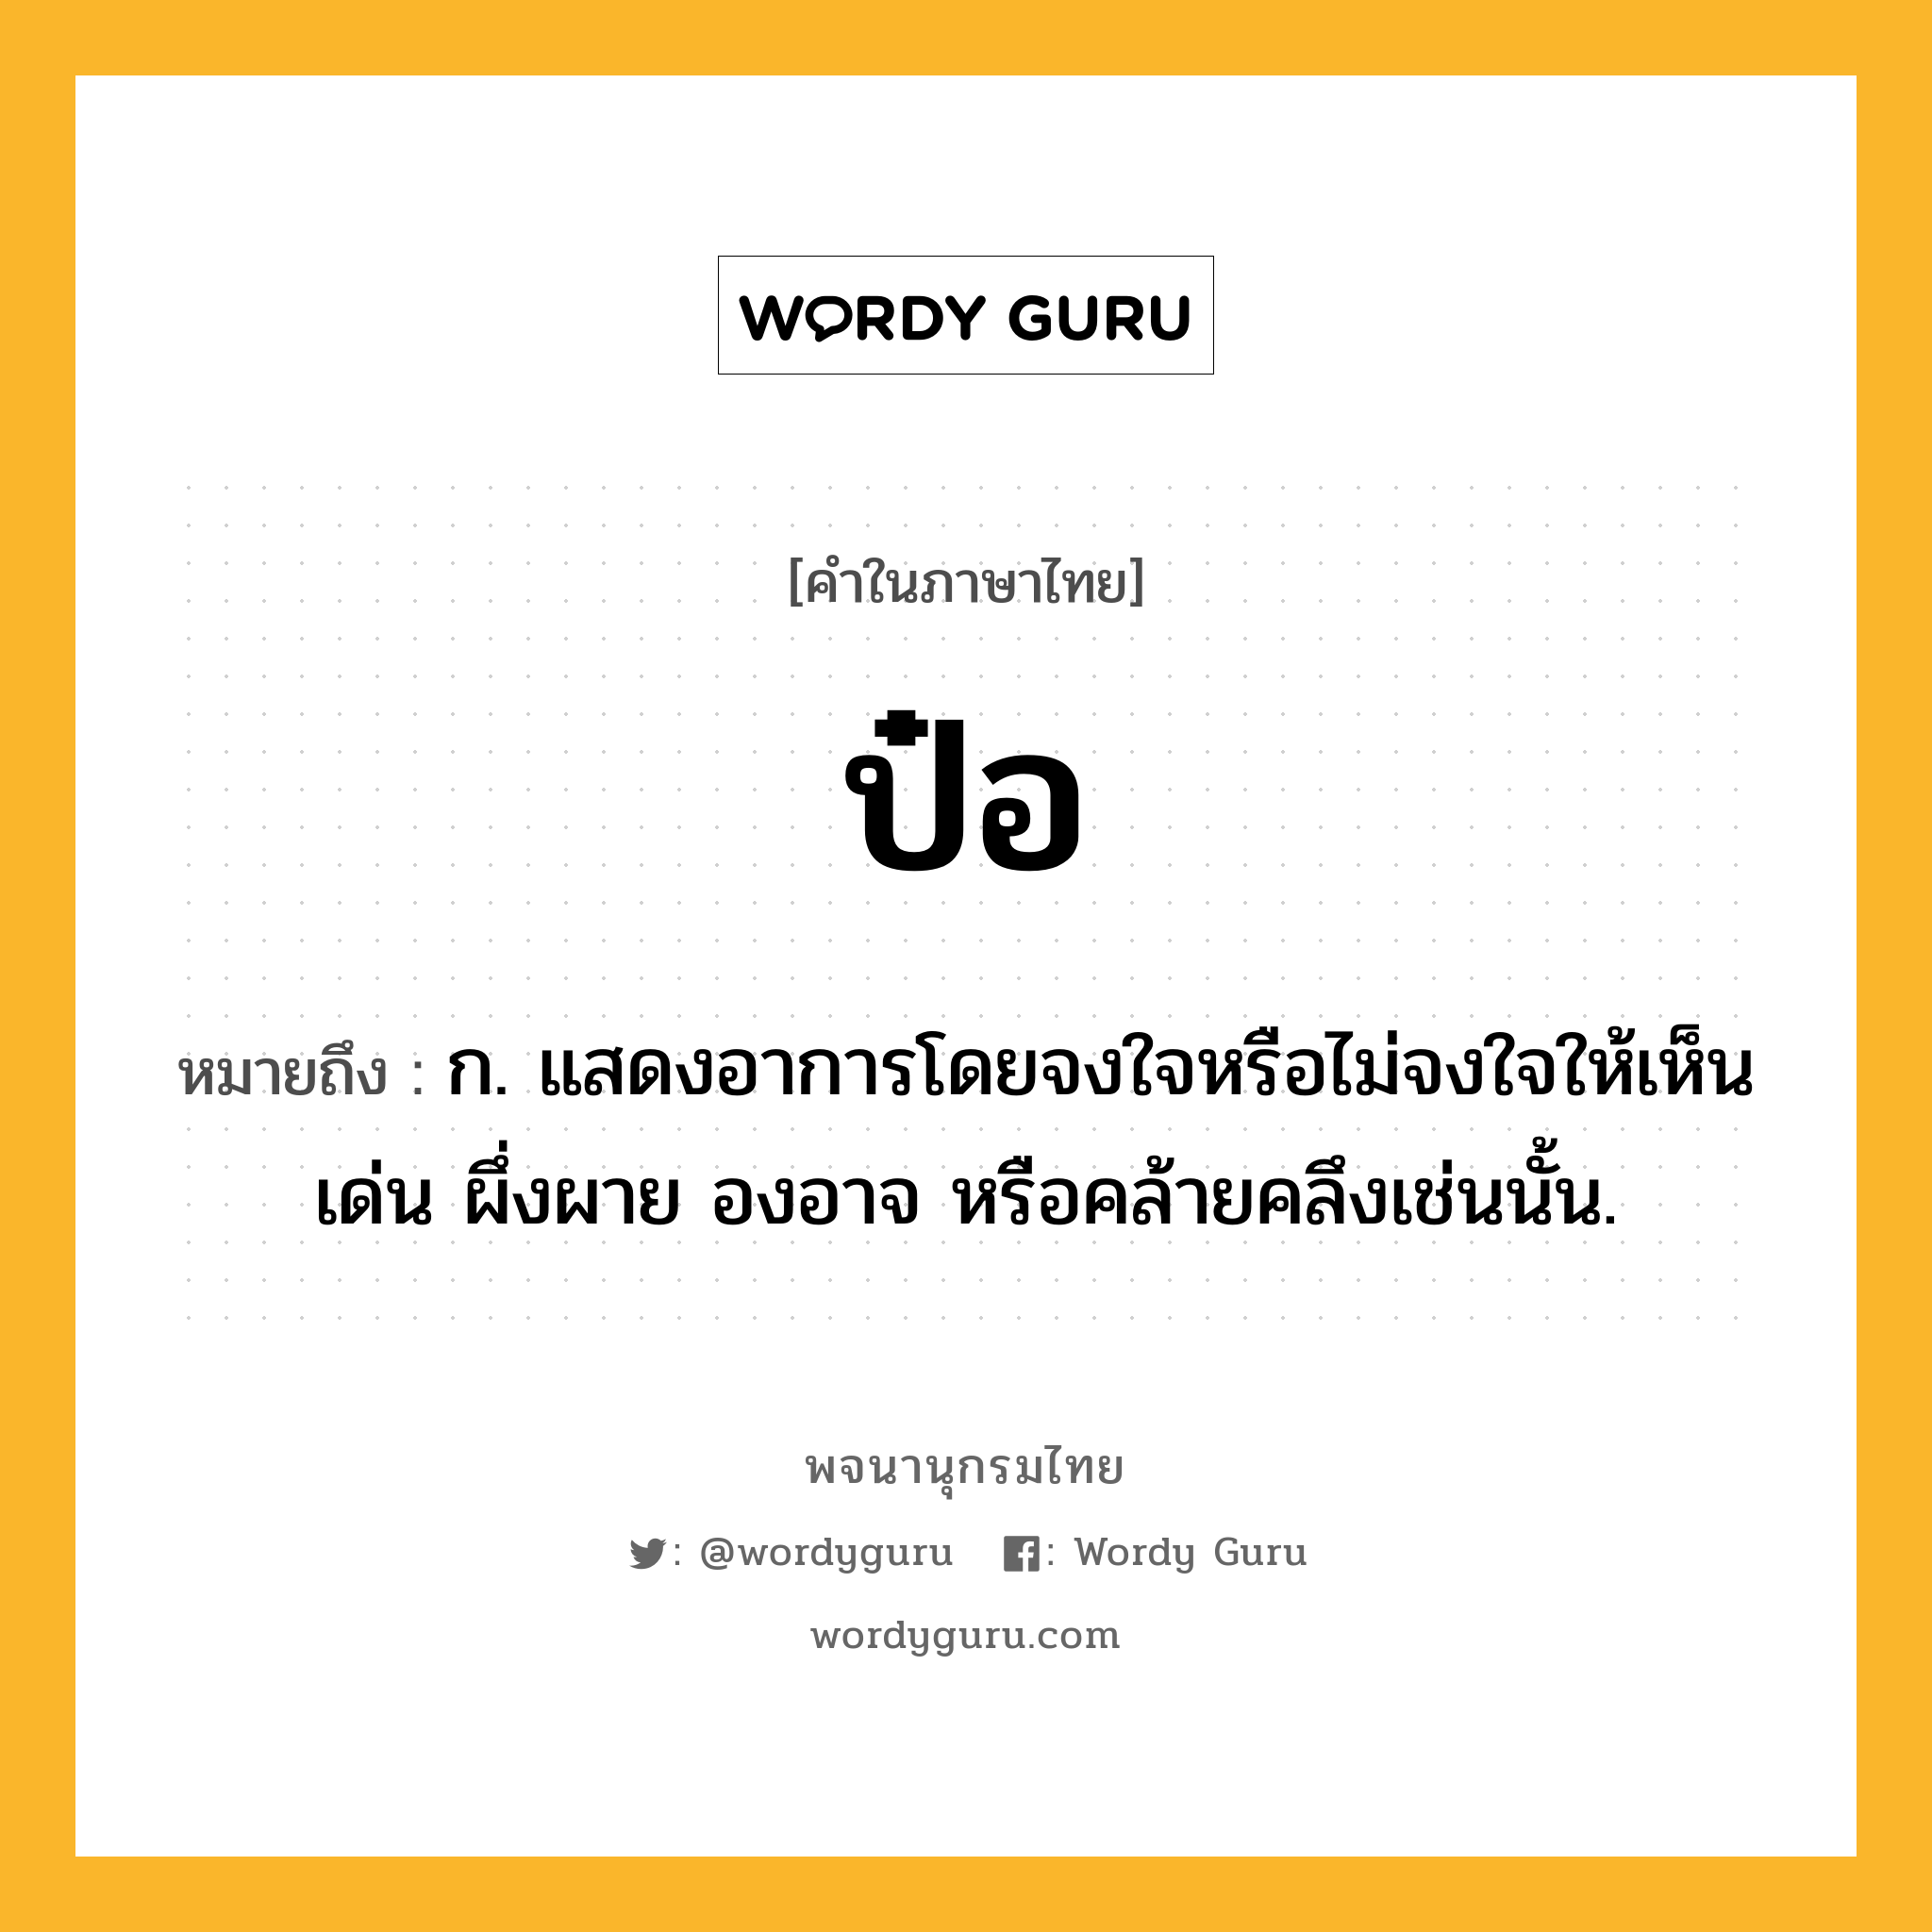 ป๋อ หมายถึงอะไร?, คำในภาษาไทย ป๋อ หมายถึง ก. แสดงอาการโดยจงใจหรือไม่จงใจให้เห็นเด่น ผึ่งผาย องอาจ หรือคล้ายคลึงเช่นนั้น.